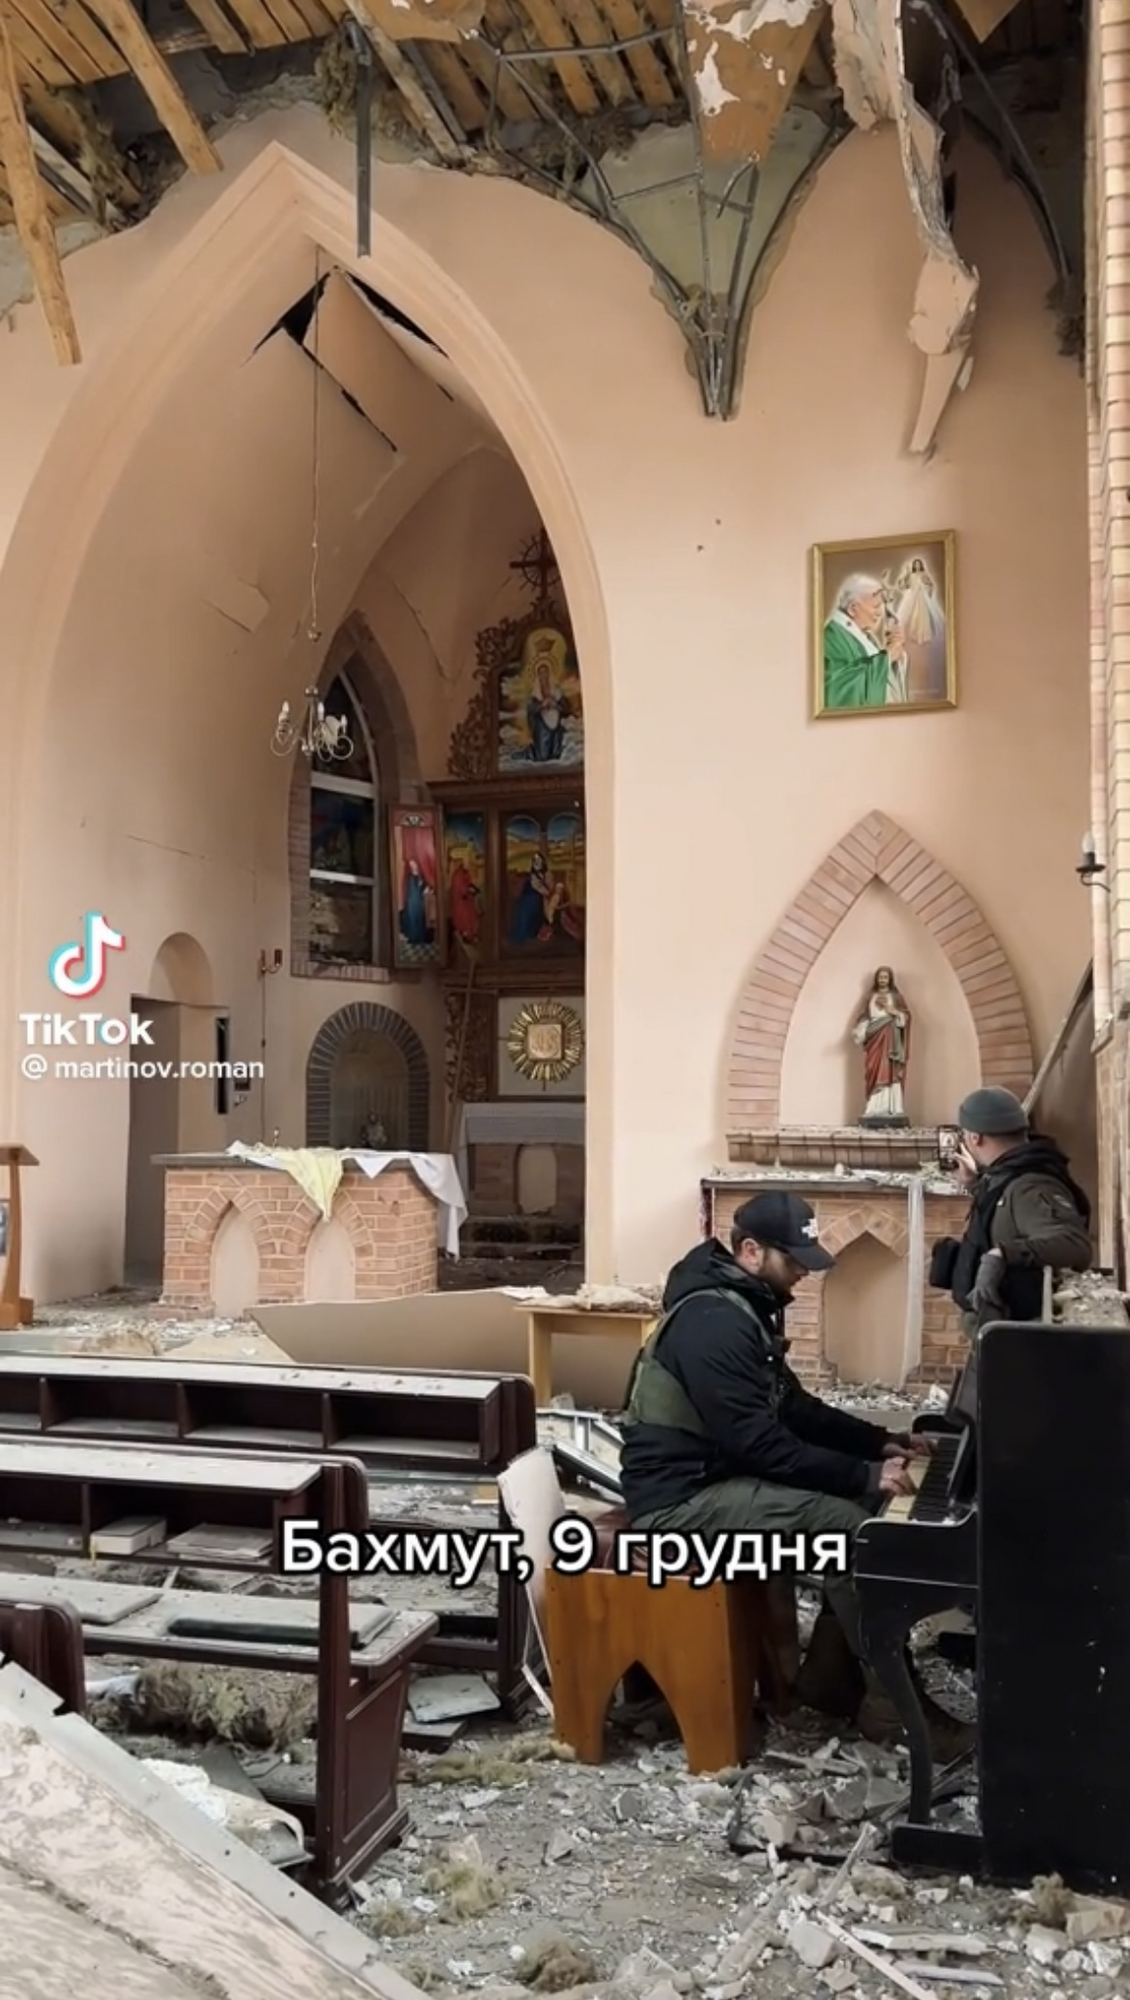 Військовий зіграв на фортепіано у зруйнованій церкві Бахмута. Відео підкорило мережу